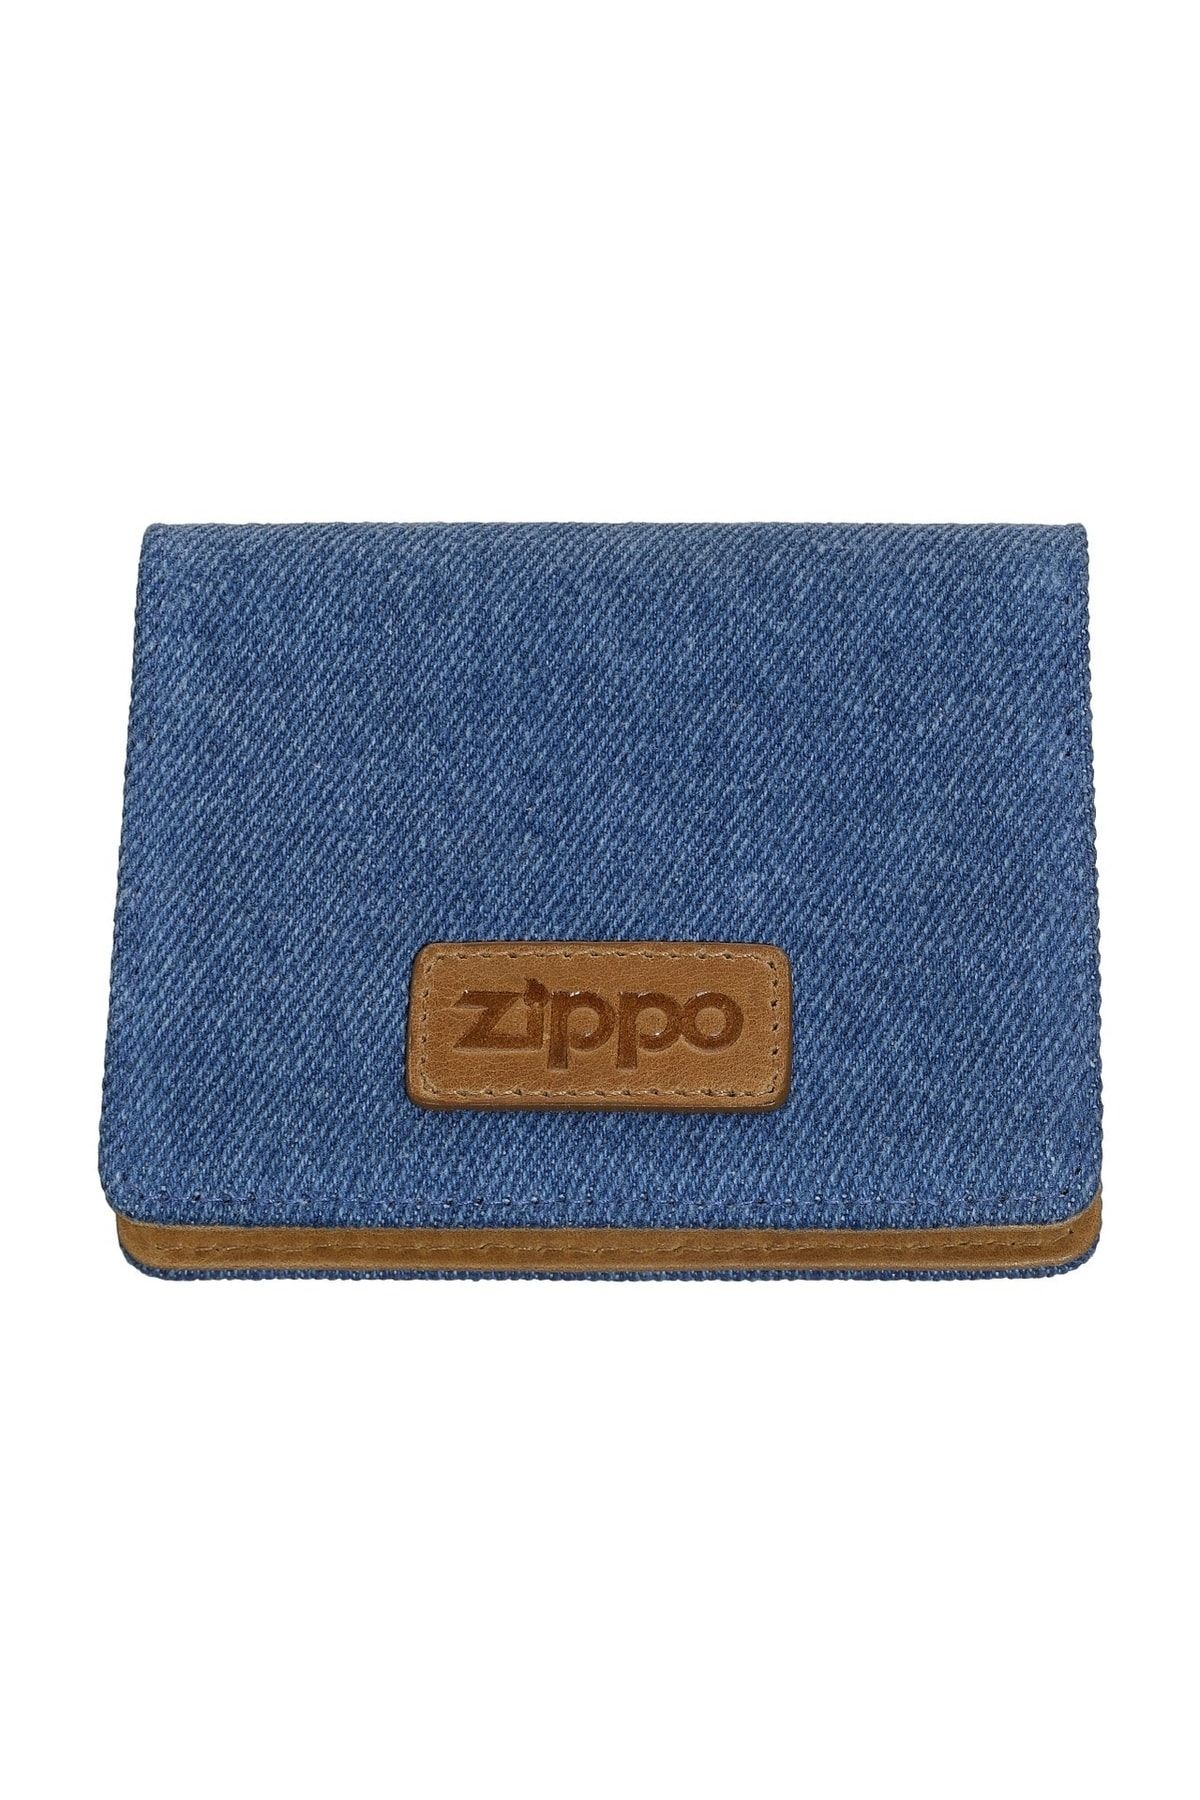 Zippo Cüzdan Card Case Denim Blue Tan 2007142